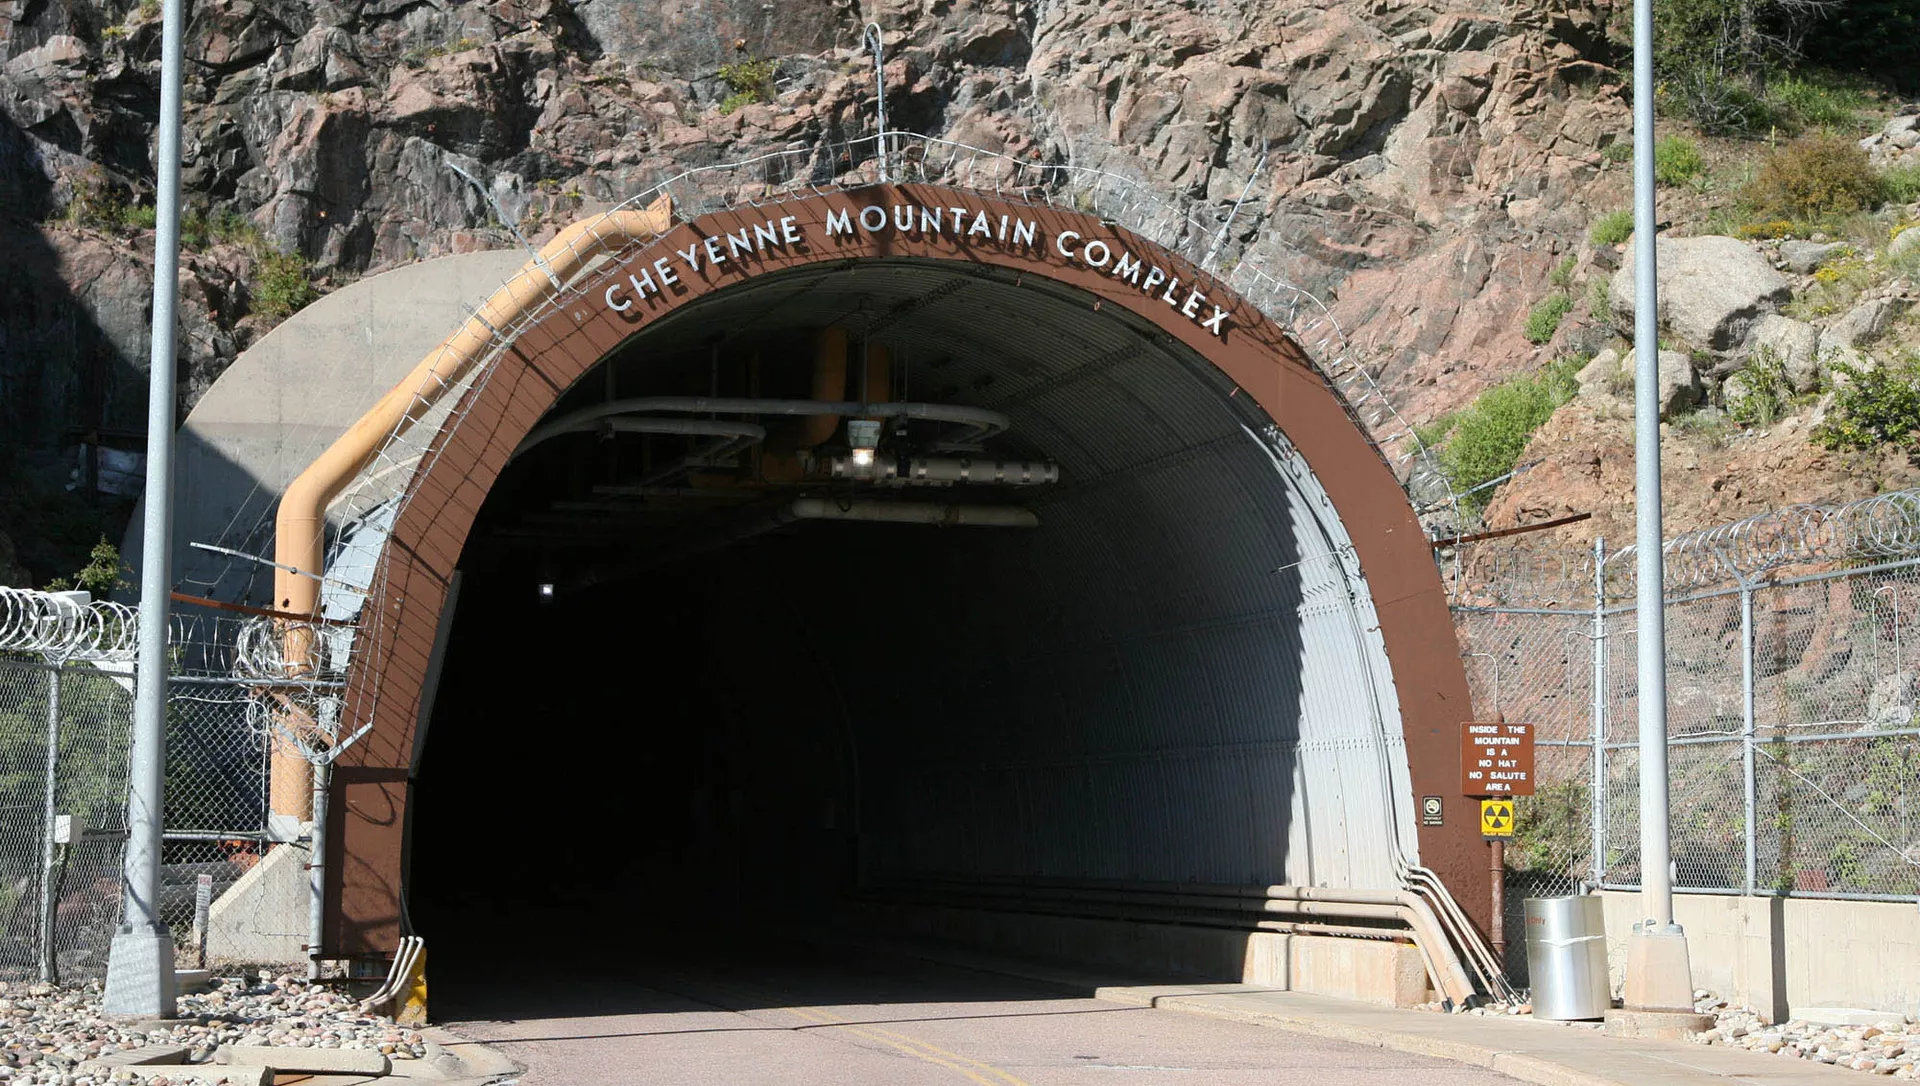 Подземный комплекс NORAD в горе Шайенн, Колорадо - РИА Новости, 1920, 17.06.2018